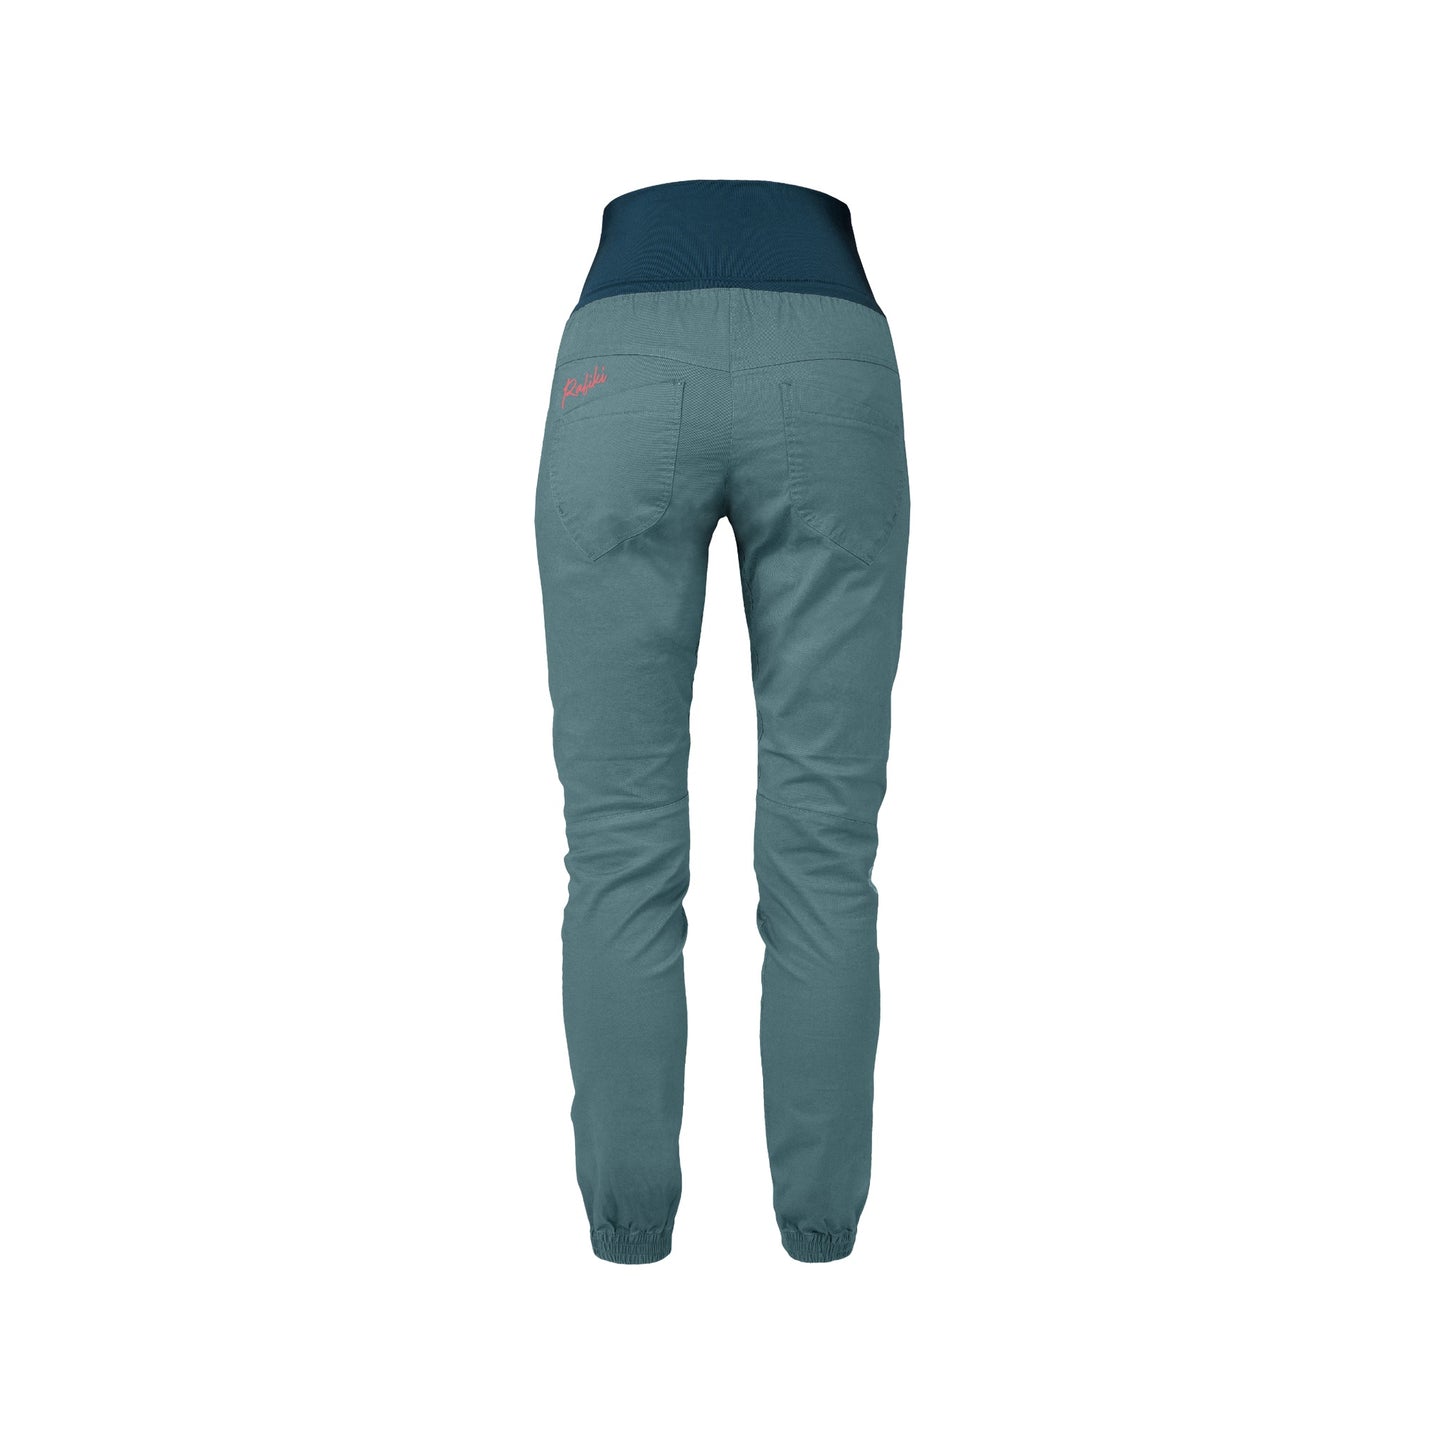  Sierra, north atlantic - women's climbing pants - RAFIKI -  72.23 € - outdoorové oblečení a vybavení shop